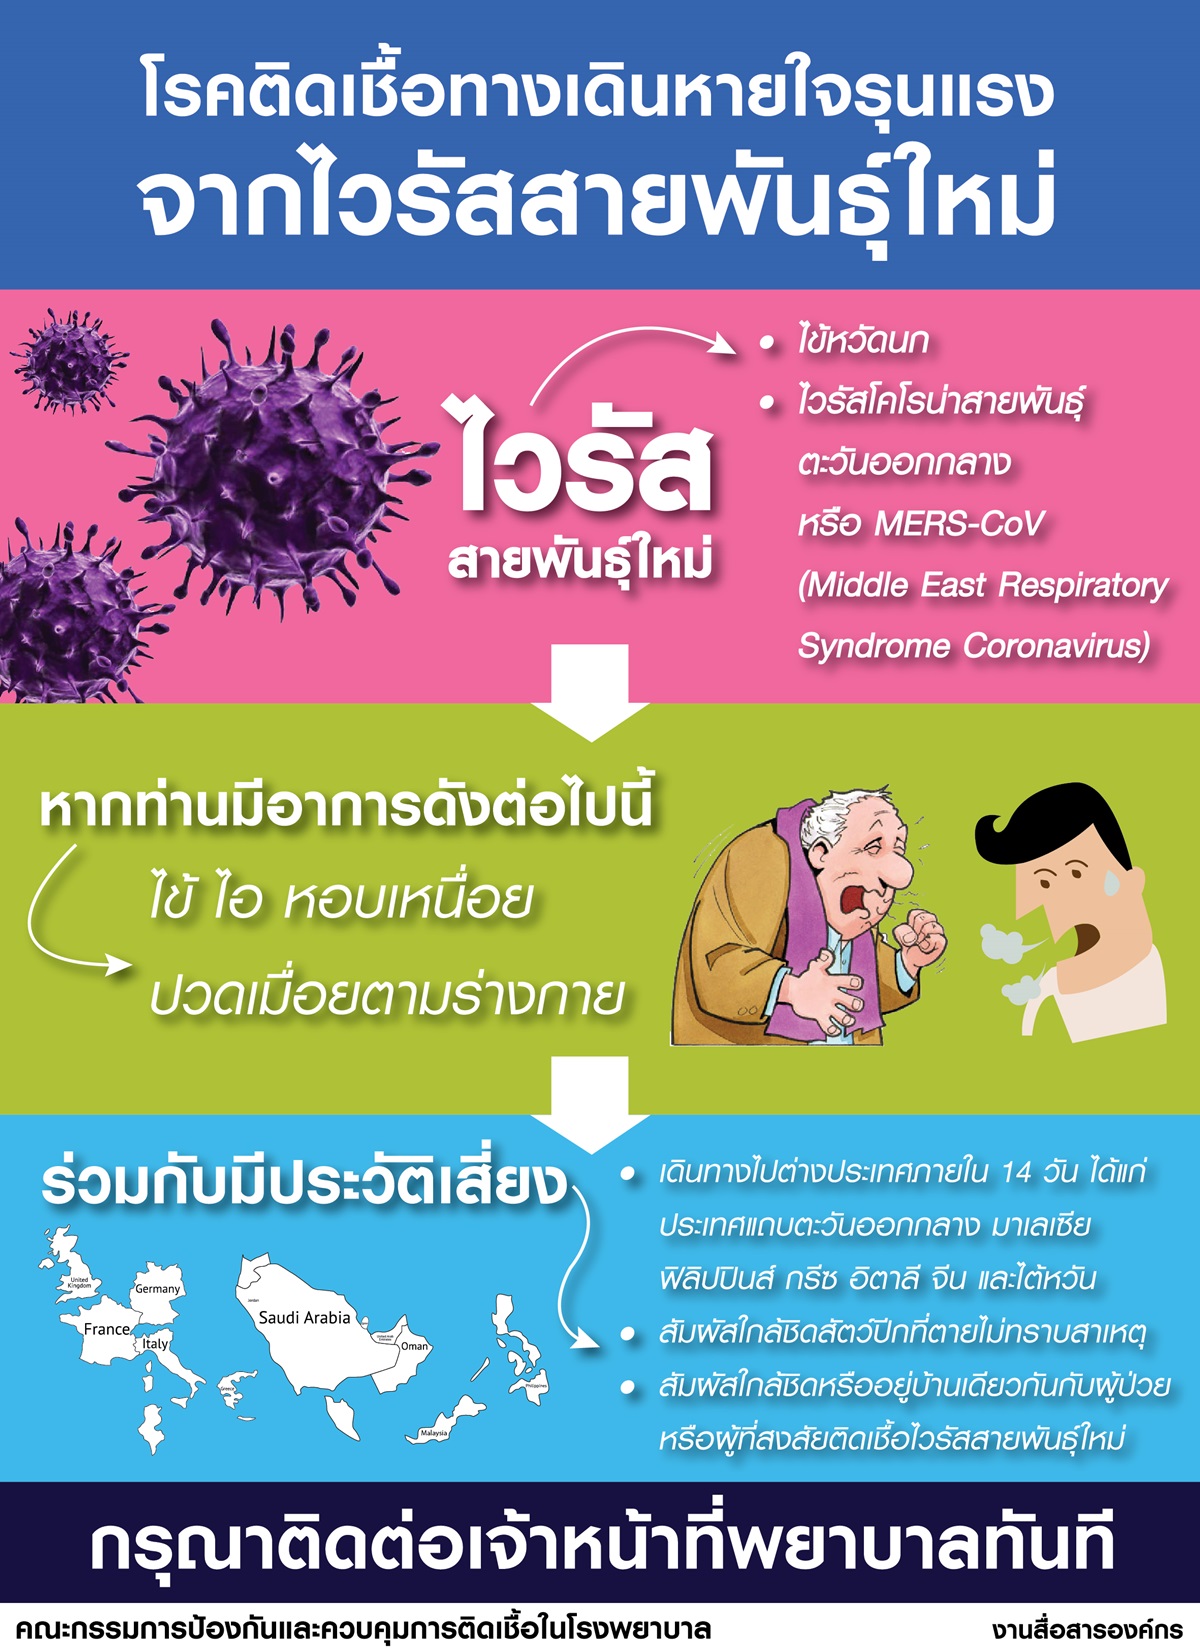 โรคติดเชื้อทางเดินหายใจรุนแรง จากไวรัสสายพันธุ์ใหม่ (mers-cov) 